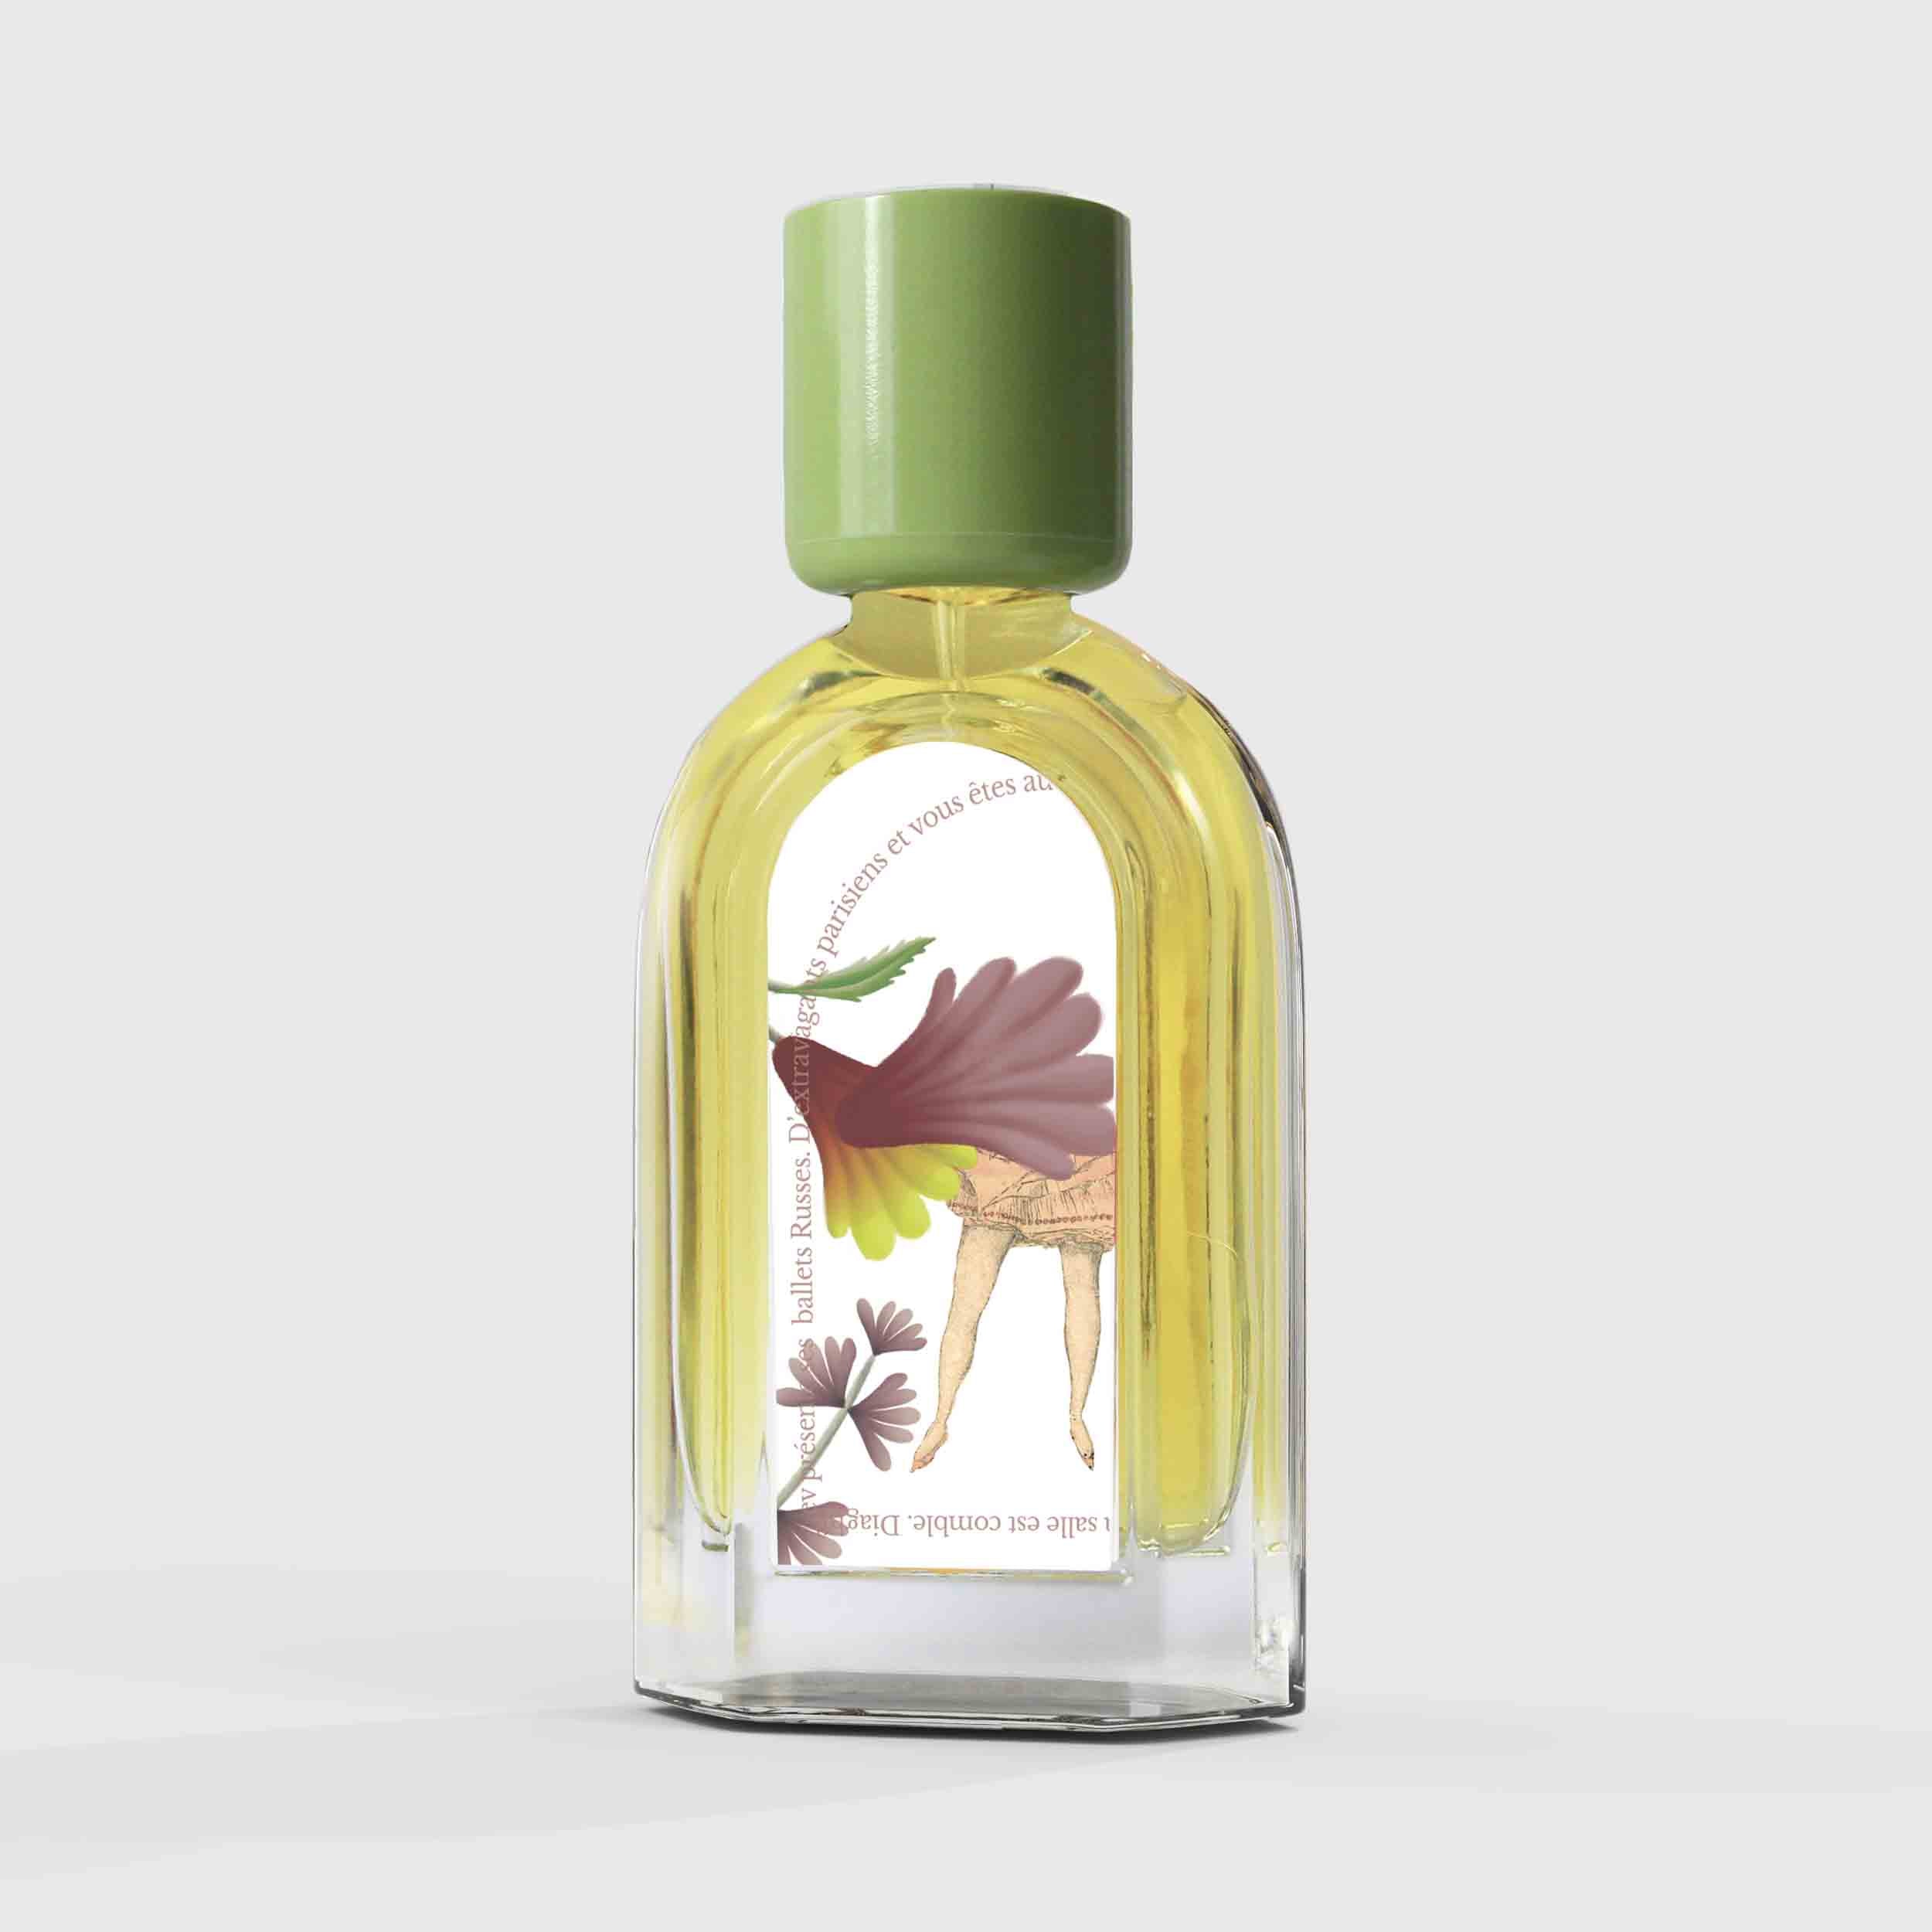 Cuir de Russie Eau de Parfum 50ml Bottle by Le Jardin Retrouvé